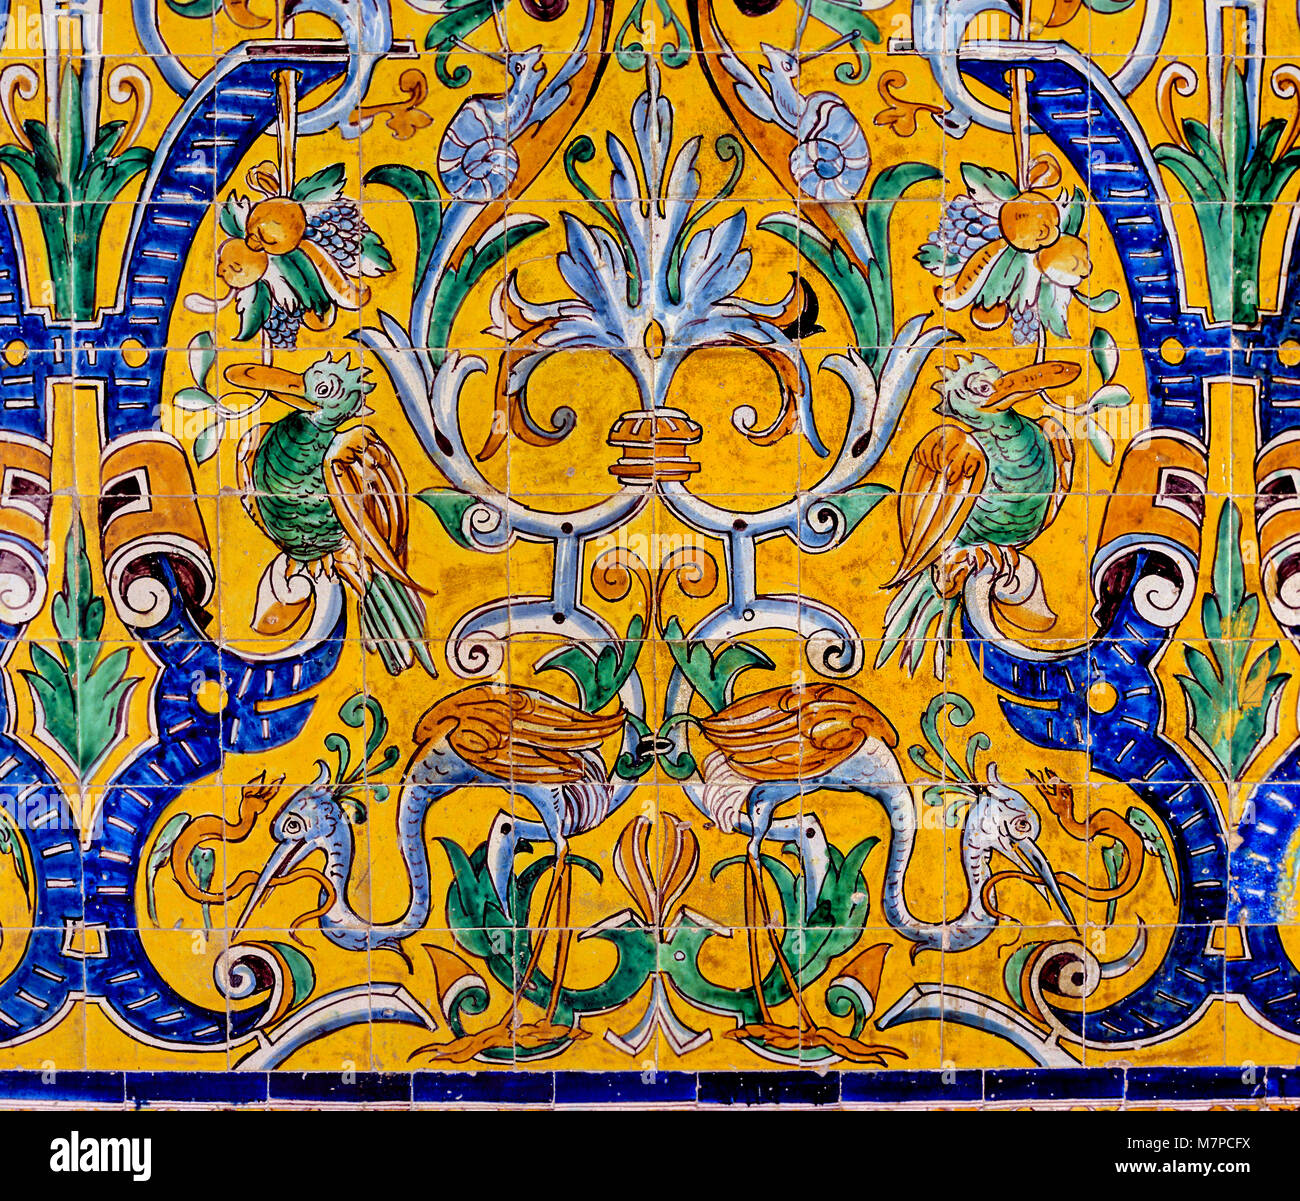 Carreaux émaillés 16ème siècle, palais gothique, Reales Alcazares, Séville, Andalousie, Espagne, Europe Banque D'Images